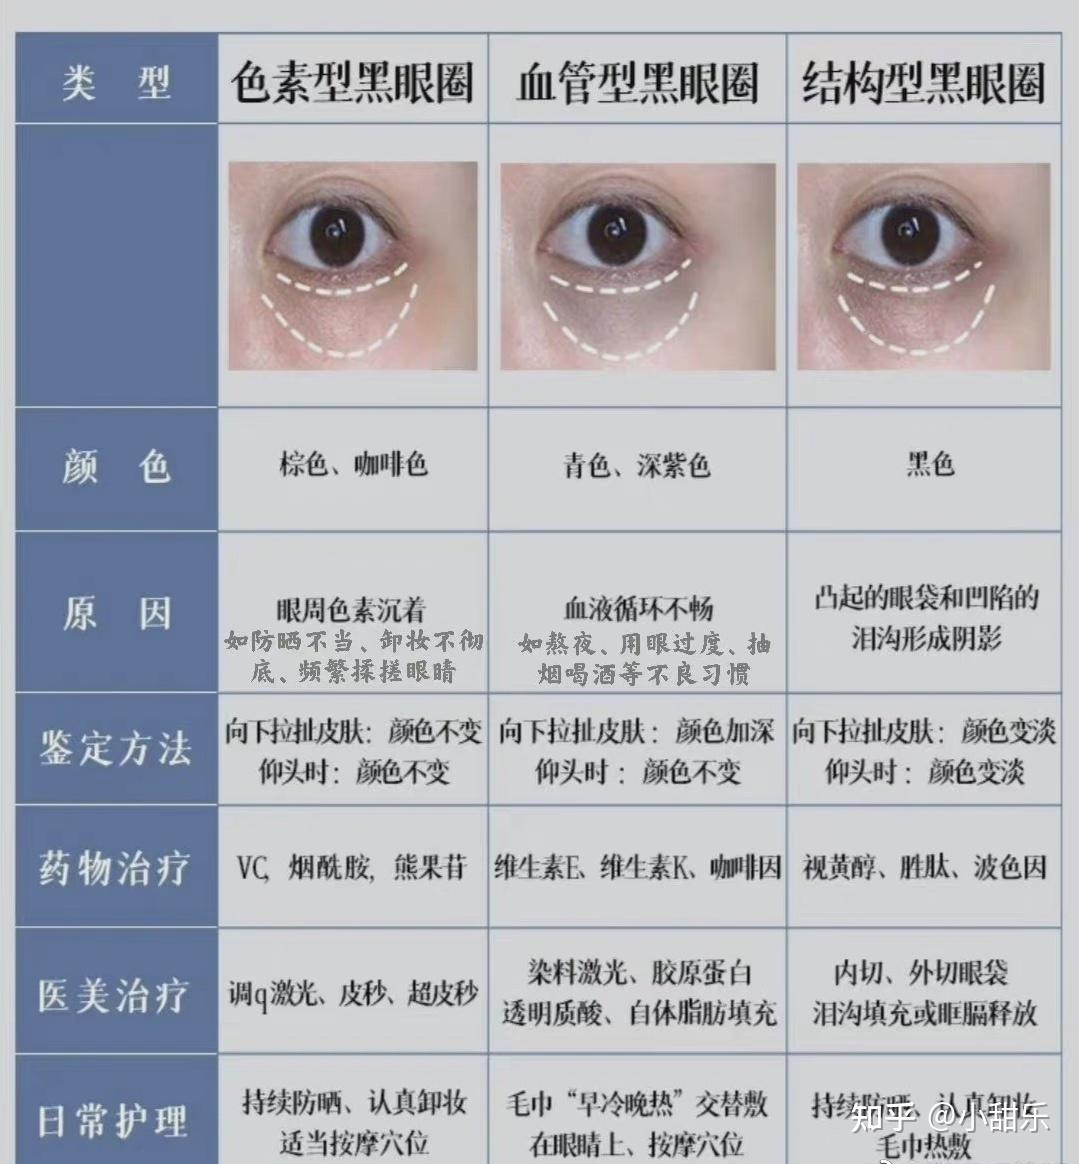 色素型黑眼圈:黑色素多,原因与没做好防晒,卸眼妆不到位有关系血管性